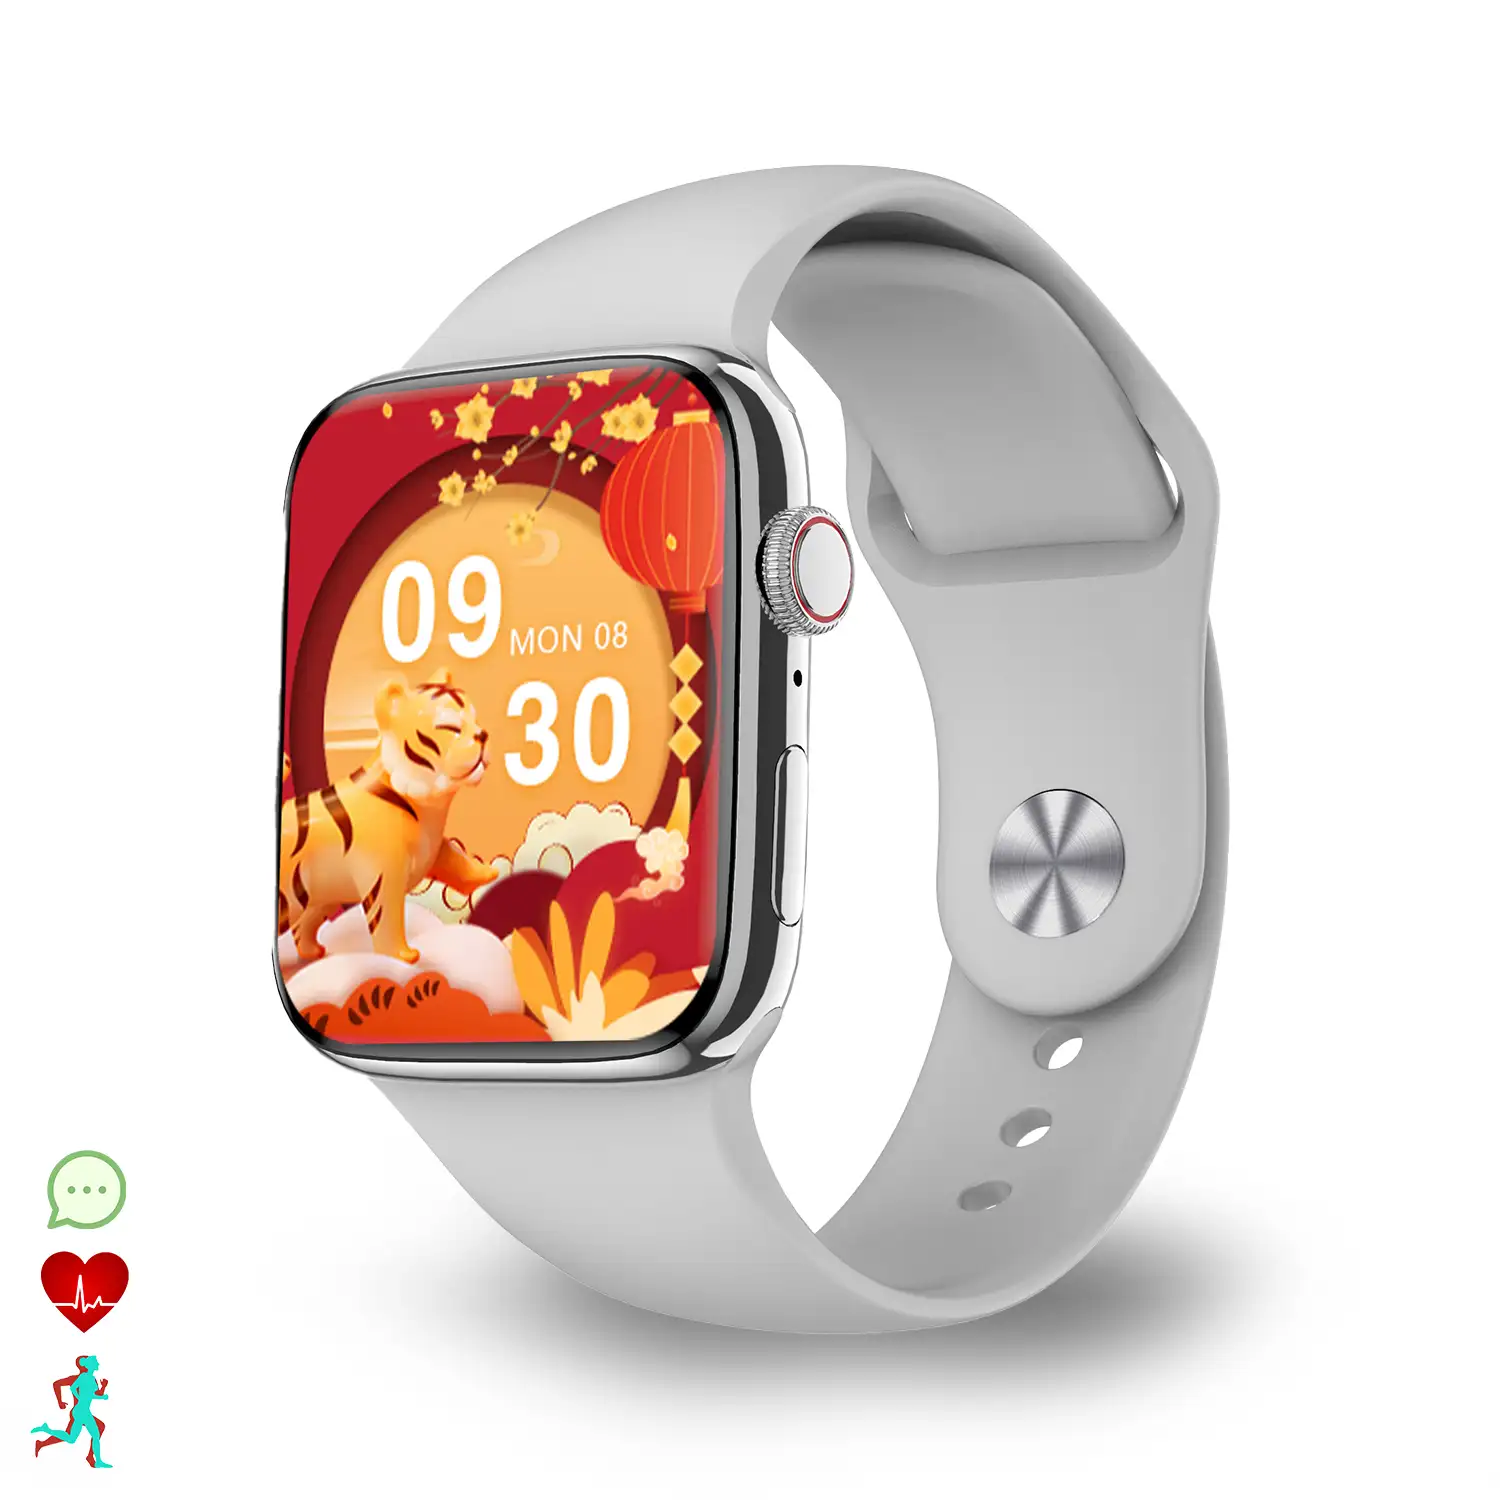 Smartwatch DT17 con pantalla HD, notificaciones de aplicaciones. Monitor cardiaco; modo multideportivo. Fondos personalizables.